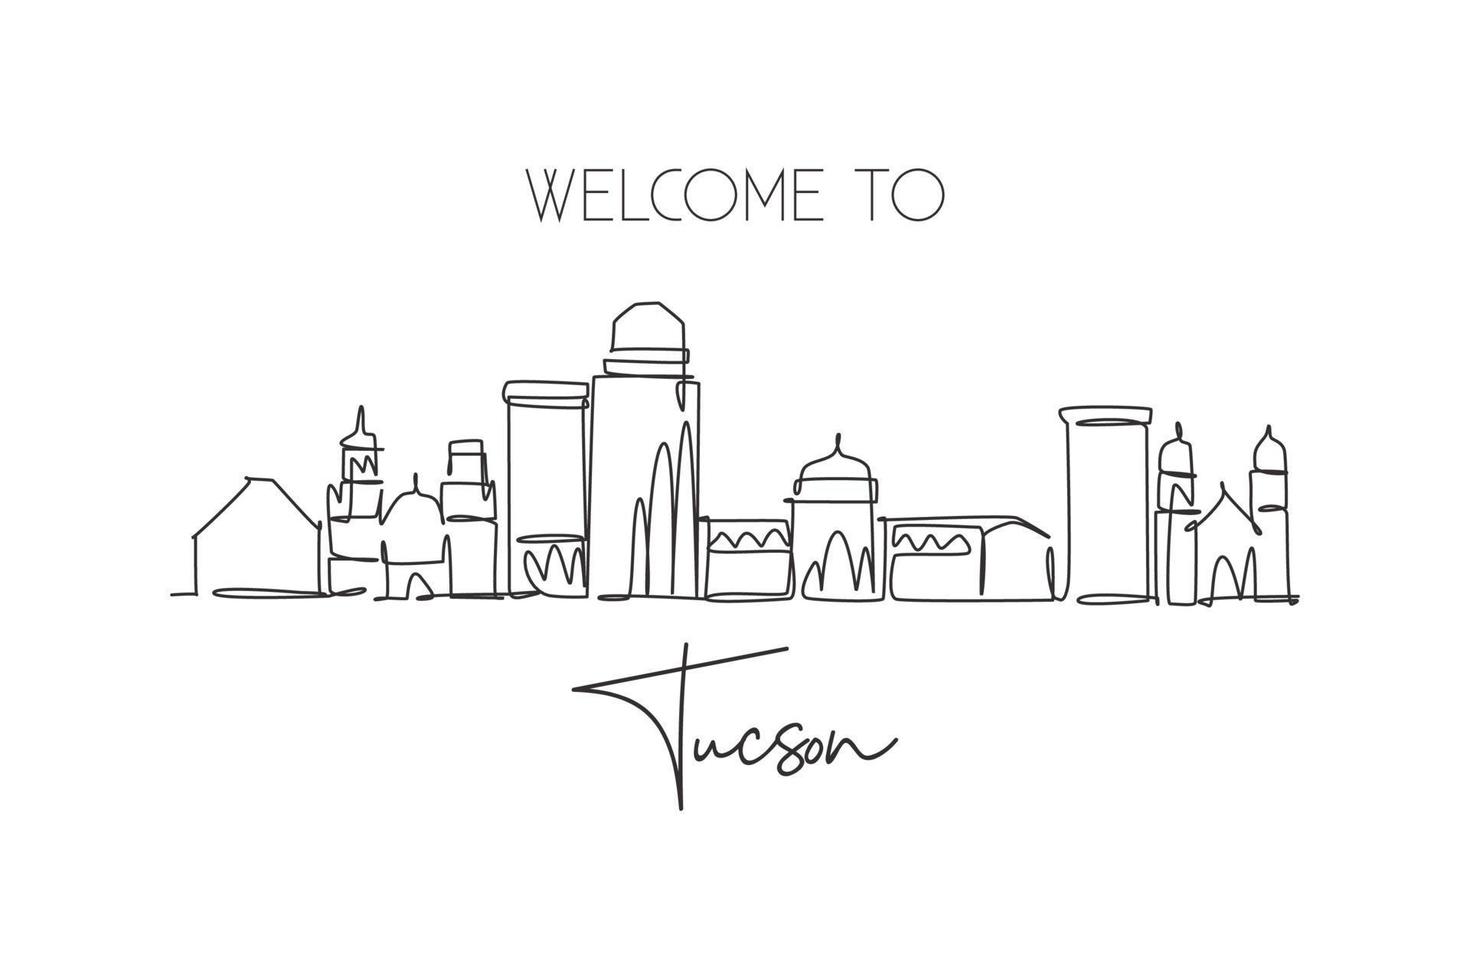 enda kontinuerlig linjeritning av tucson city skyline, arizona. berömda stadsskrapalandskap. världsresor koncept hem vägg dekor konst affischtryck. moderna en rad rita design vektorillustration vektor